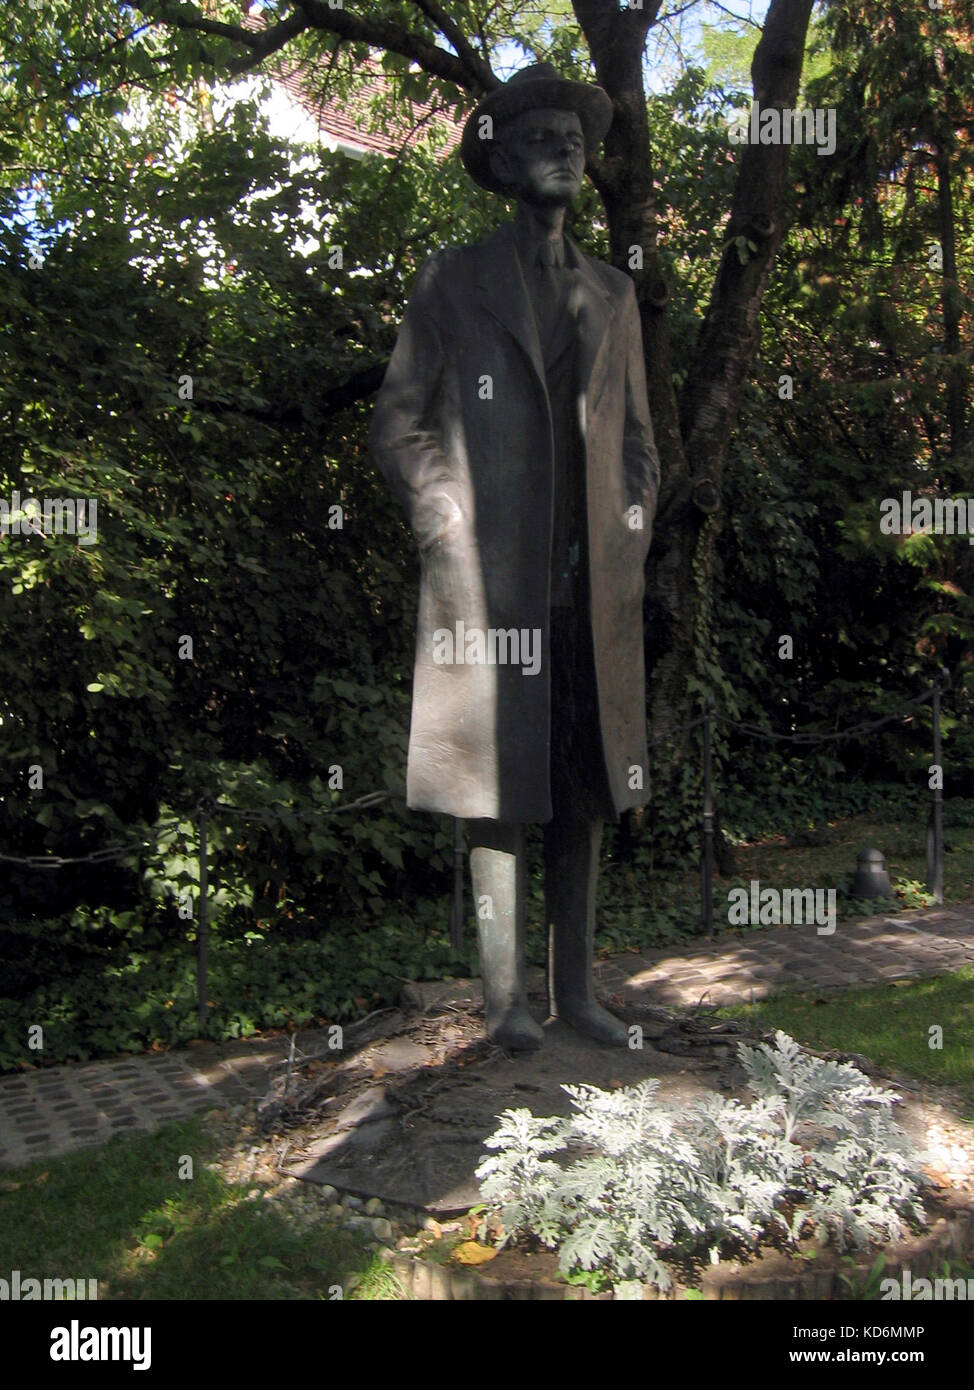 Statua di Bela Bartok al di fuori della Bela Bartok Memorial House - Un tempo casa del compositore, Ungheria, Budapest. Ungherese del compositore e pianista, 1881-1945. Foto Stock